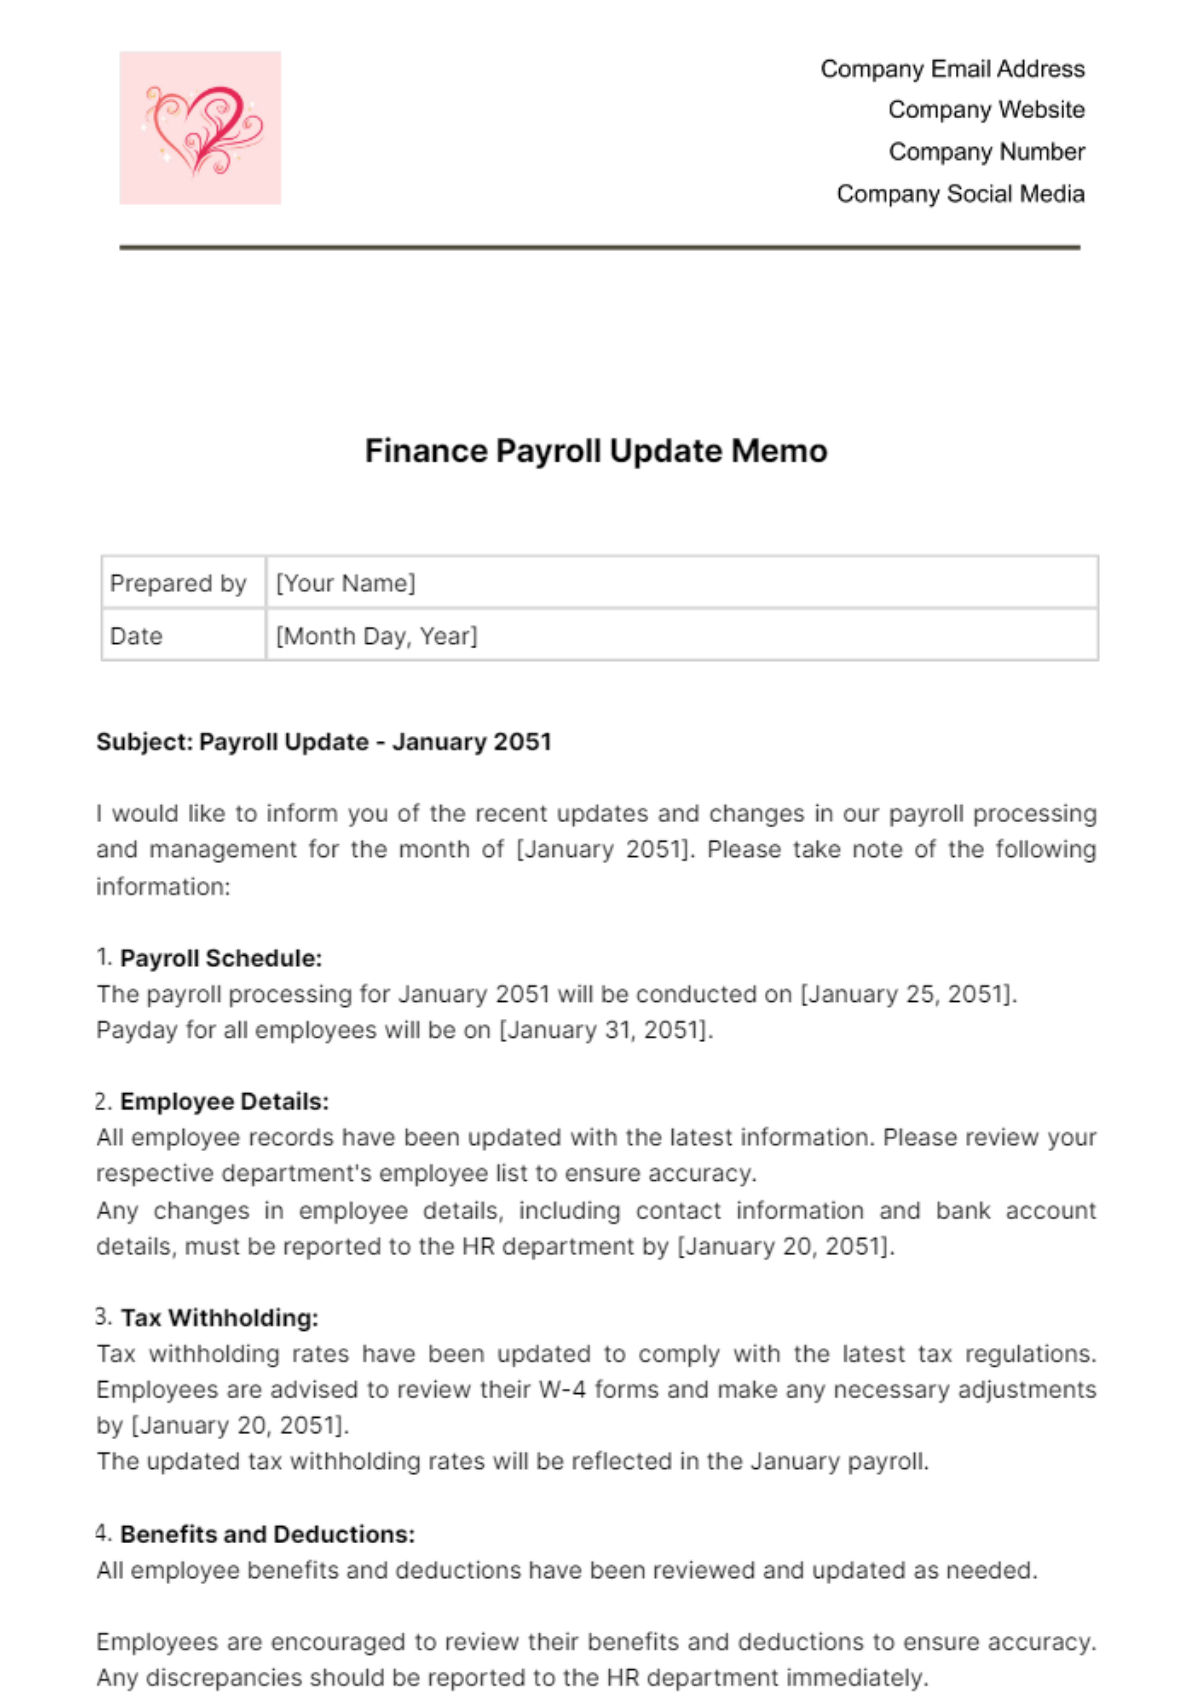 Finance Payroll Update Memo Template